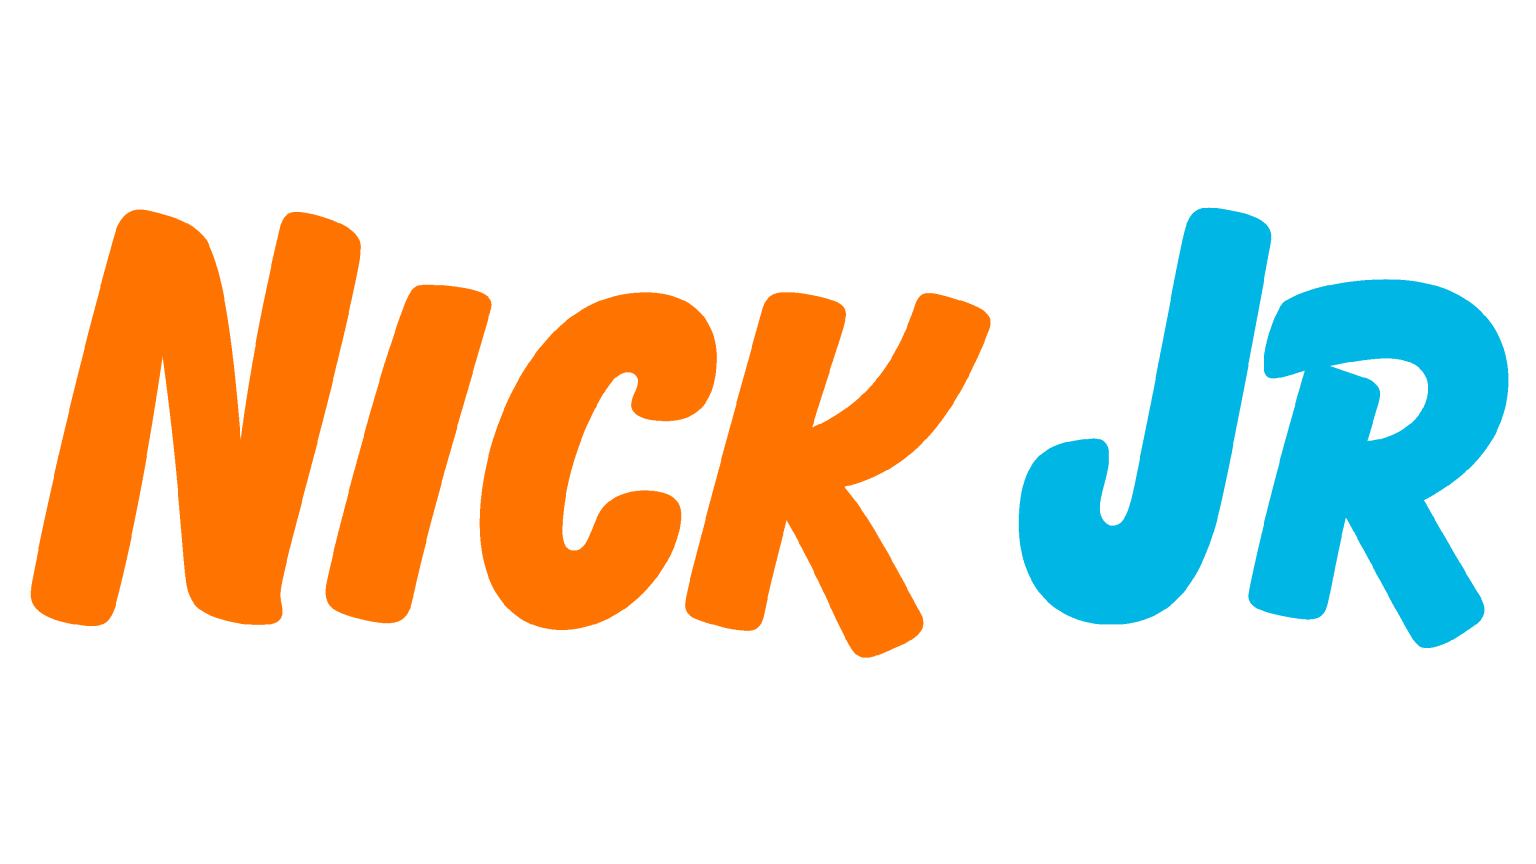 Nick jr 1. Nick Jr логотип. Канал Nick Jr. Nick Jr Телеканал. Nick Jr. Канал лого.